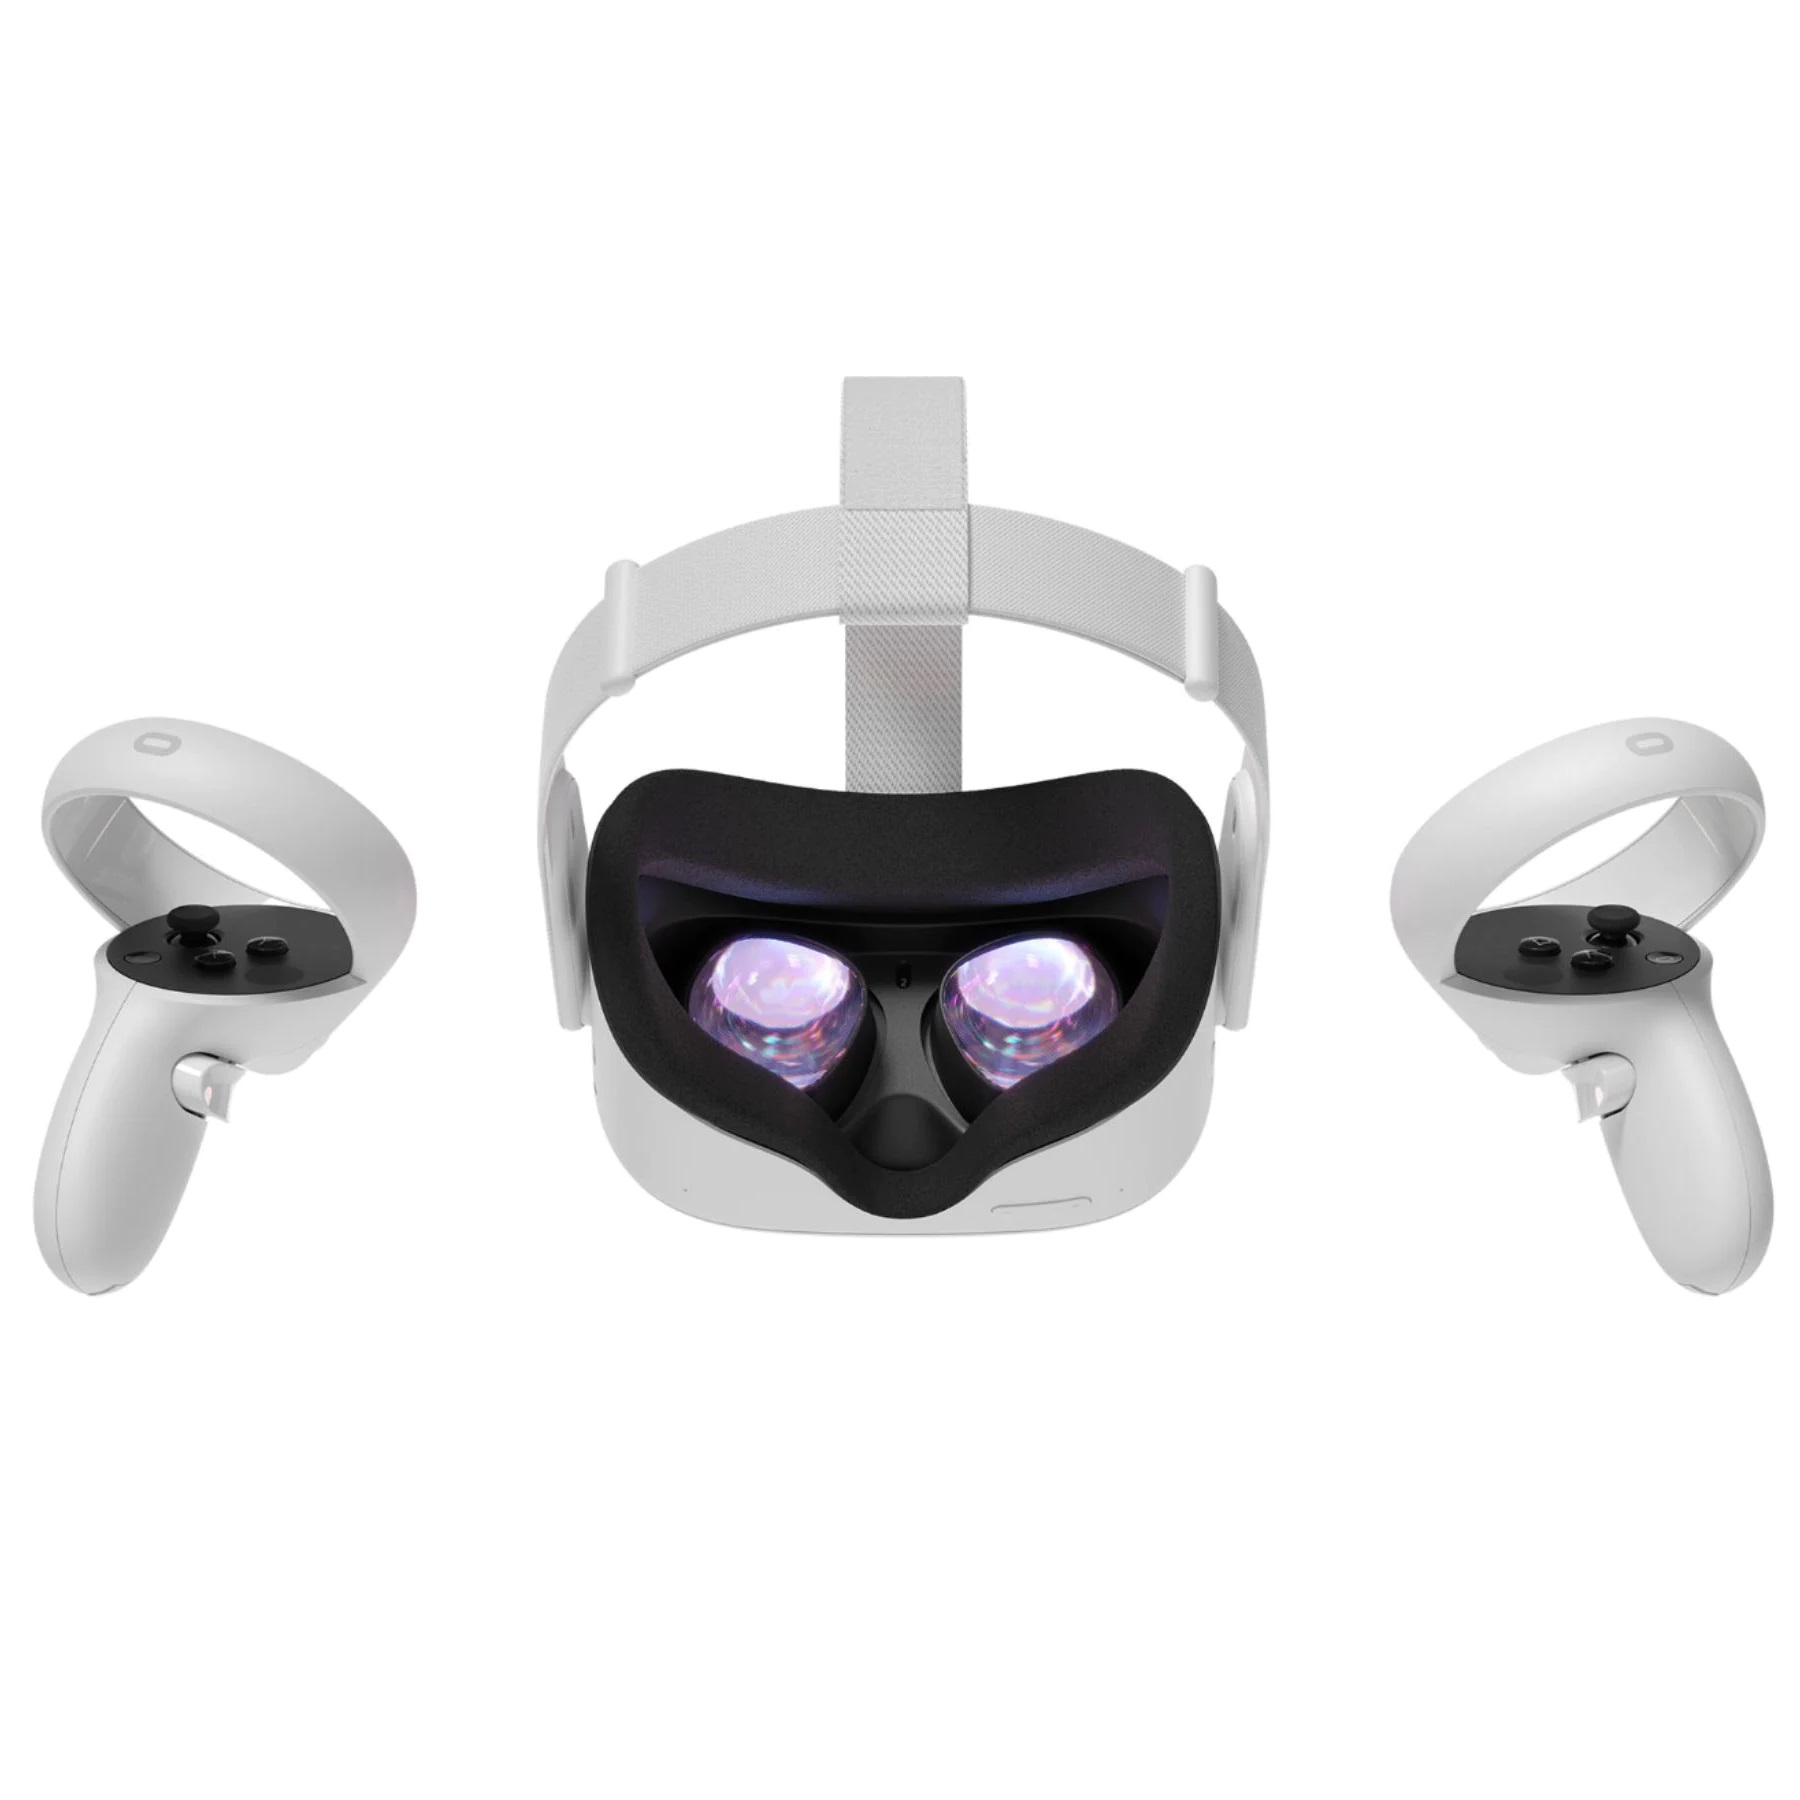 Шлем виртуальной реальности Oculus Quest 2 256 GB